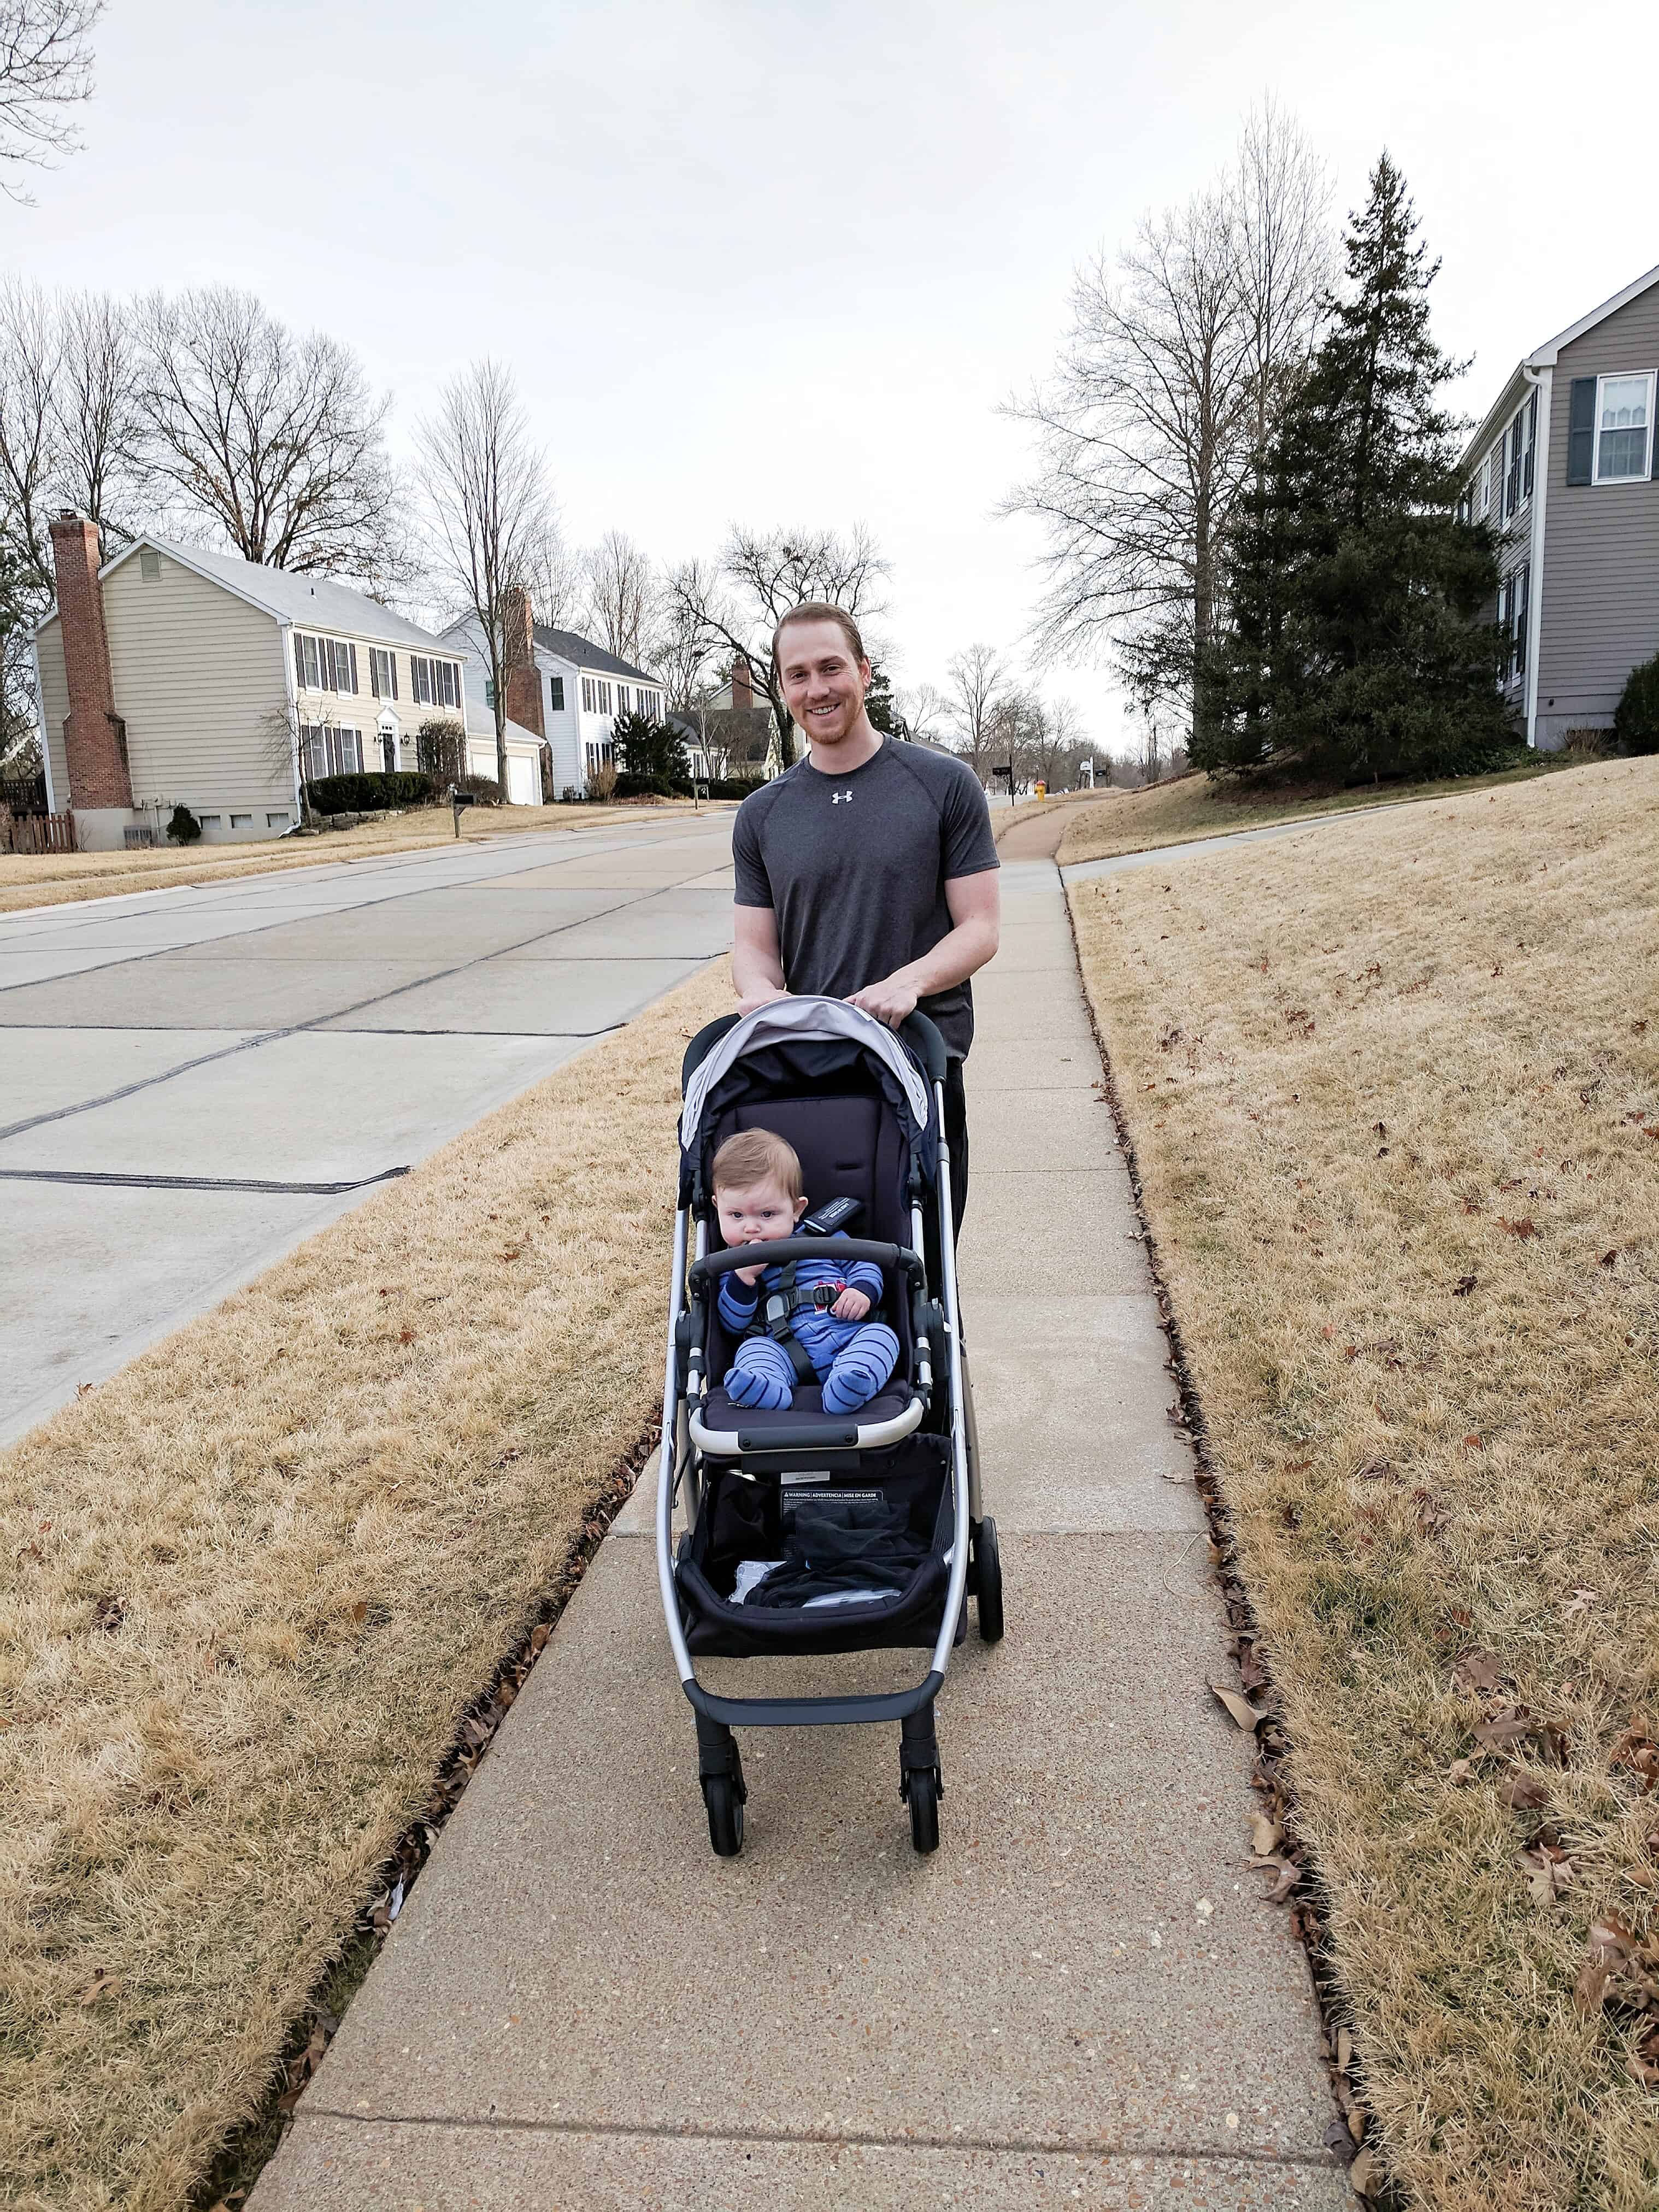 Dad pushing baby in stroller on sidewalk | Buying a stroller 